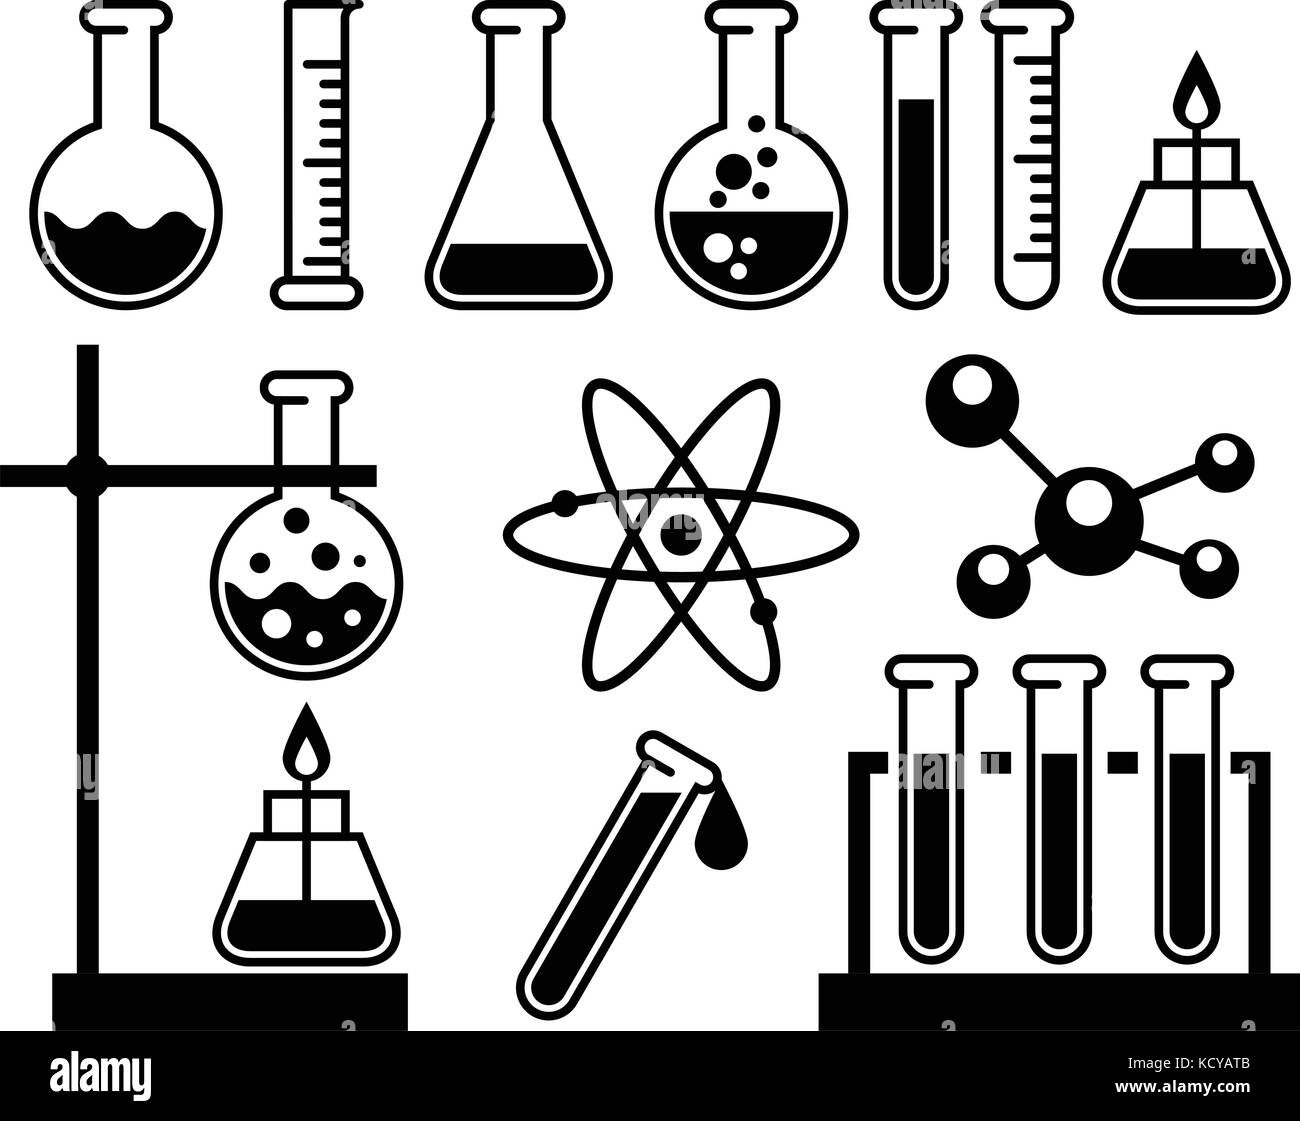 Chemische Laborgeräte - Röhrchen, Flaschen und Glas Stock Vektor